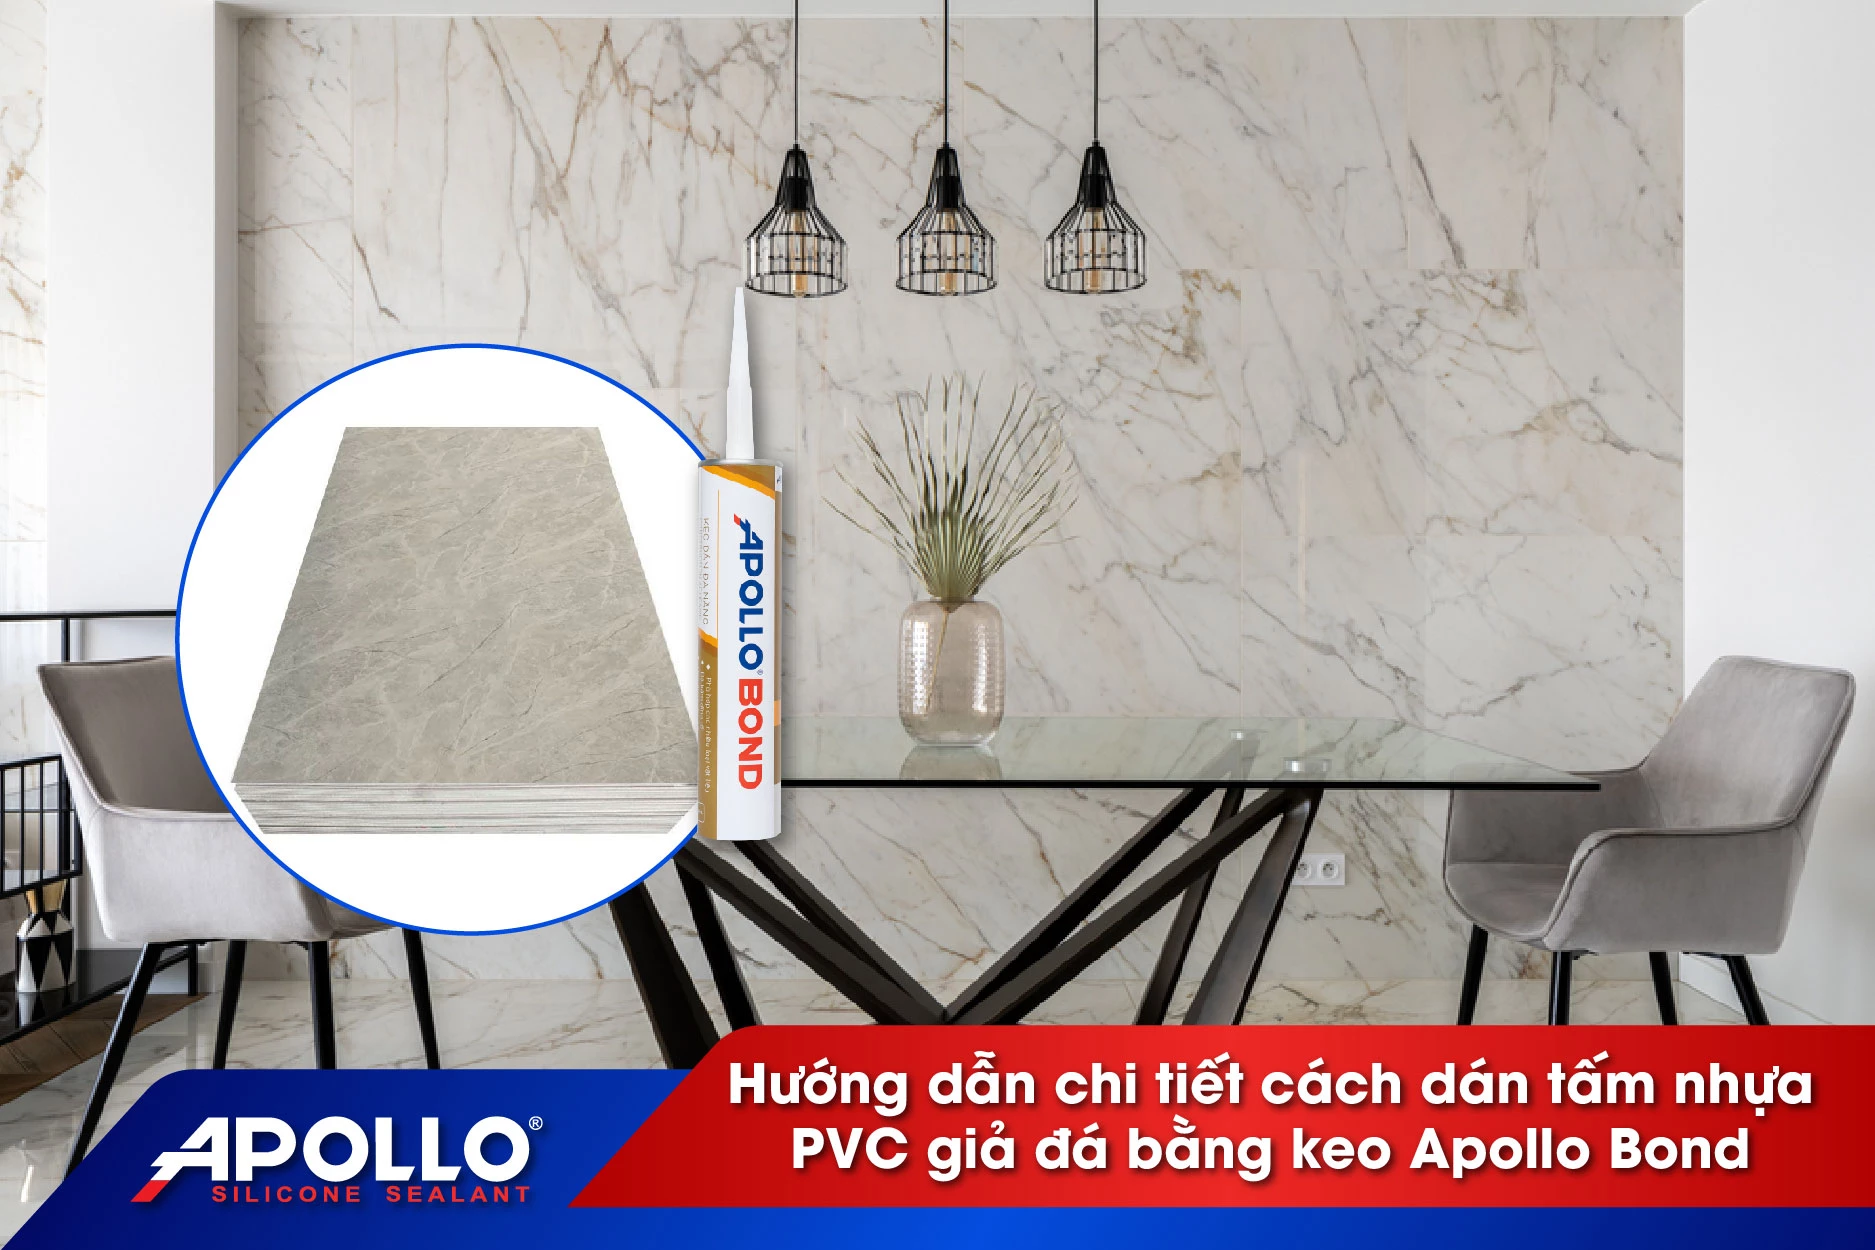 Hướng dẫn chi tiết cách dán tấm nhựa PVC giả đá bằng keo Apollo Bond